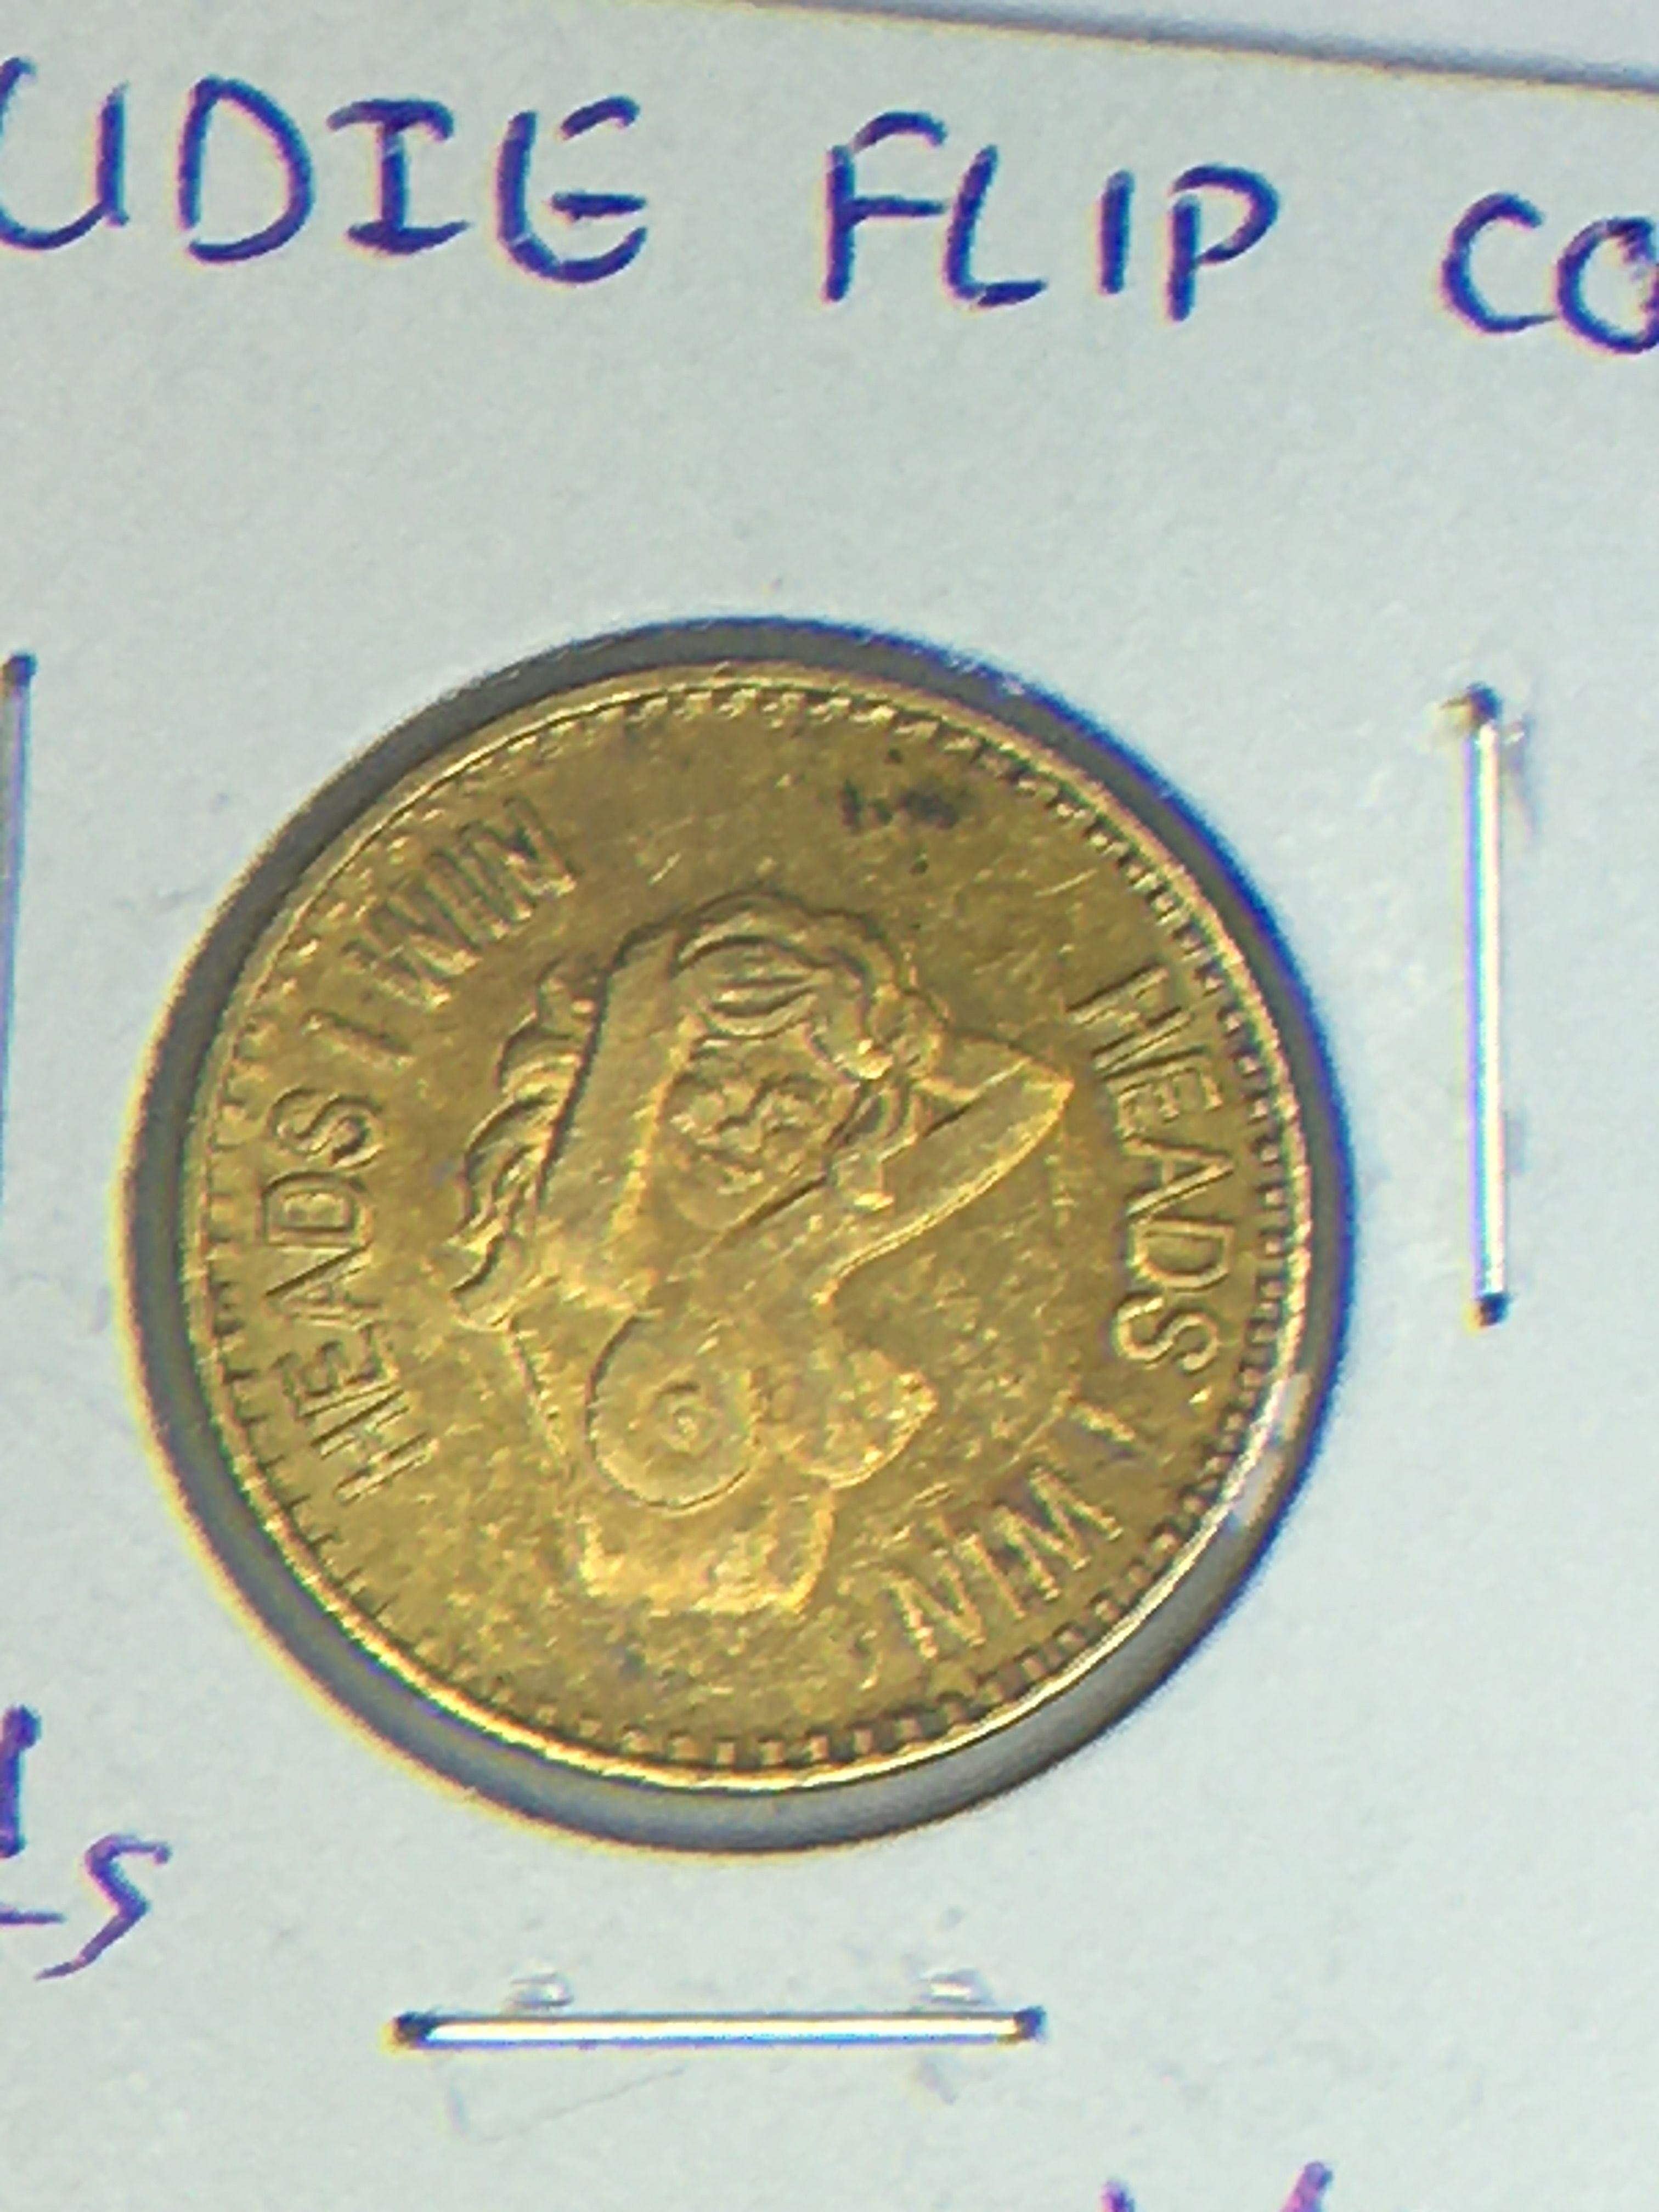 Nudie Flip Coin